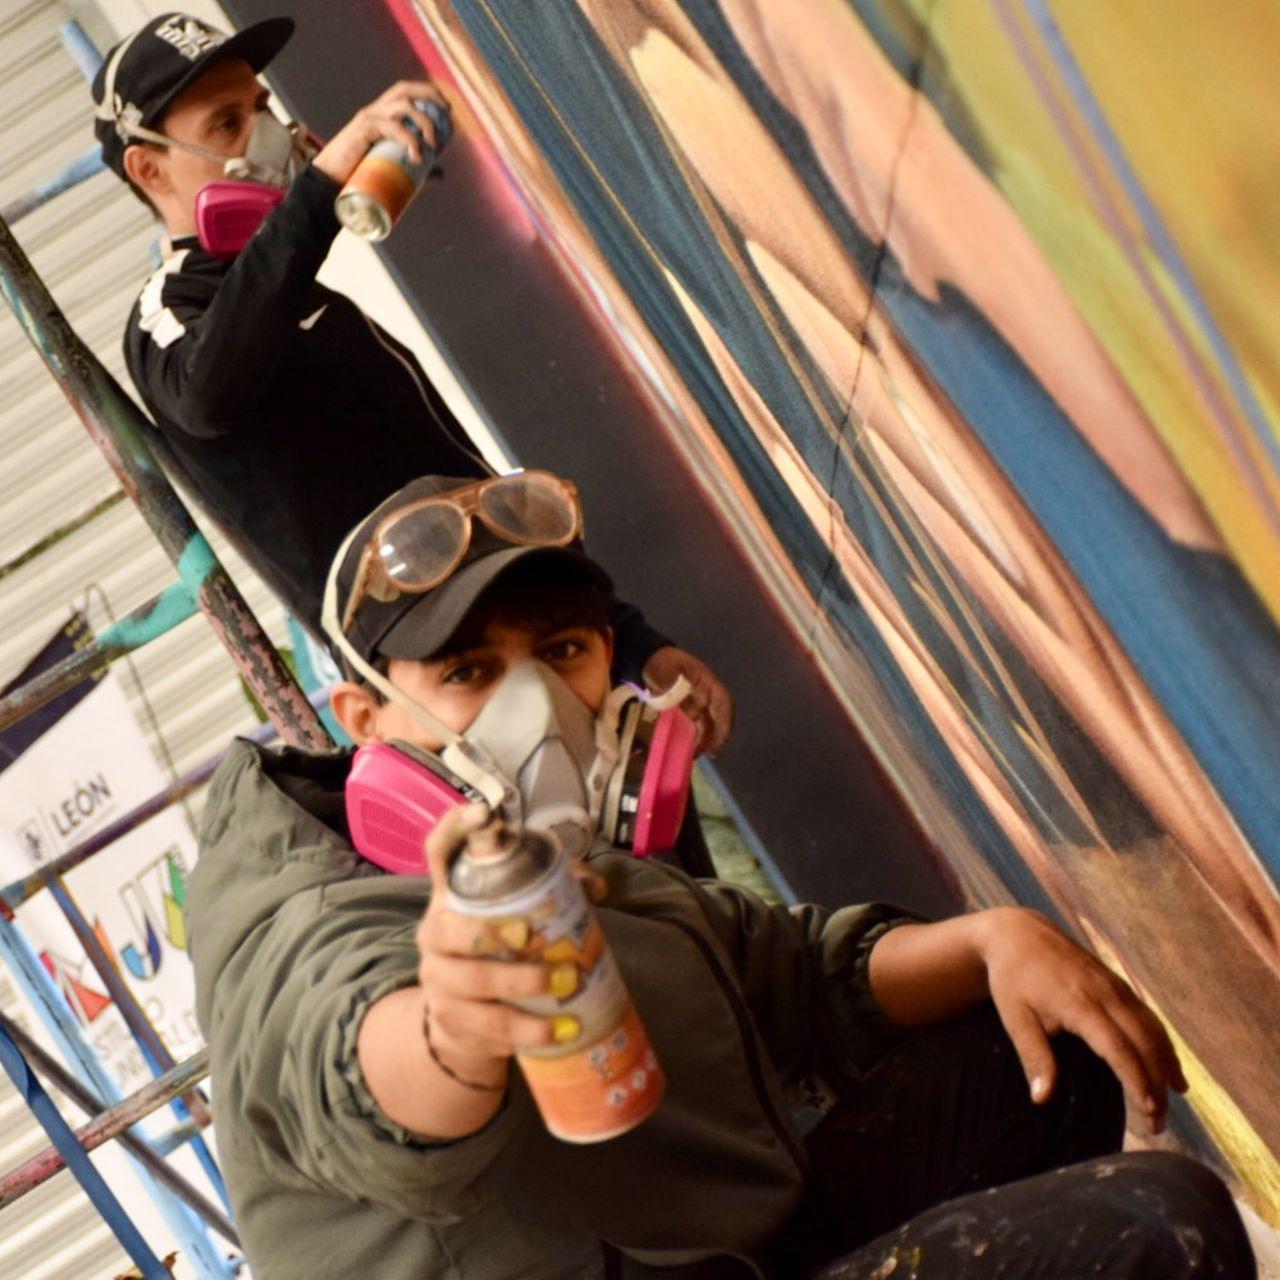 $!Zhot Rnk y Brote Rnk, son los artistas urbanos originarios de León que crean el mural.